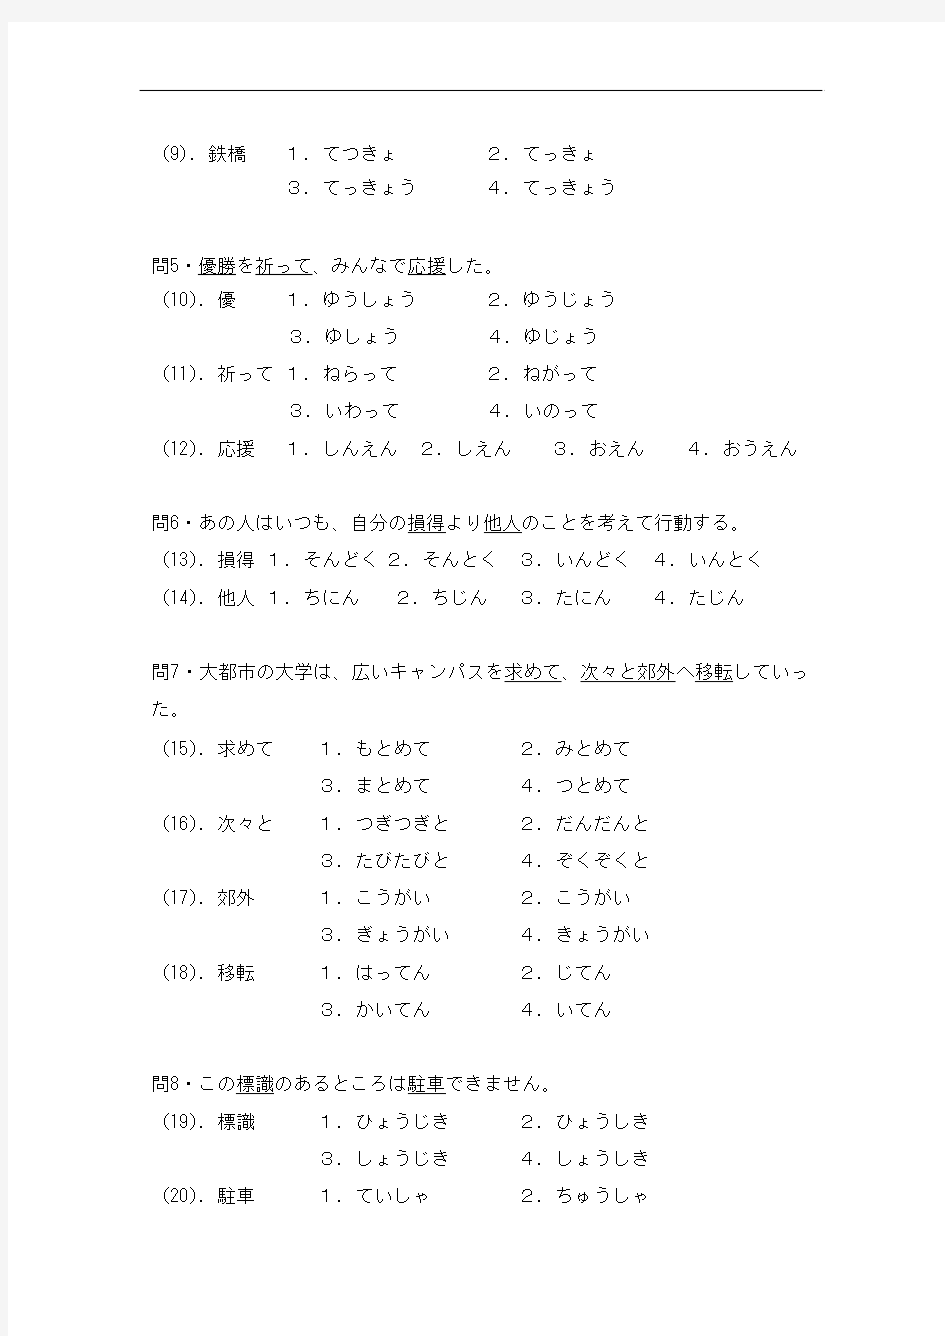 2006年日语能力考试2级真题-文字词汇